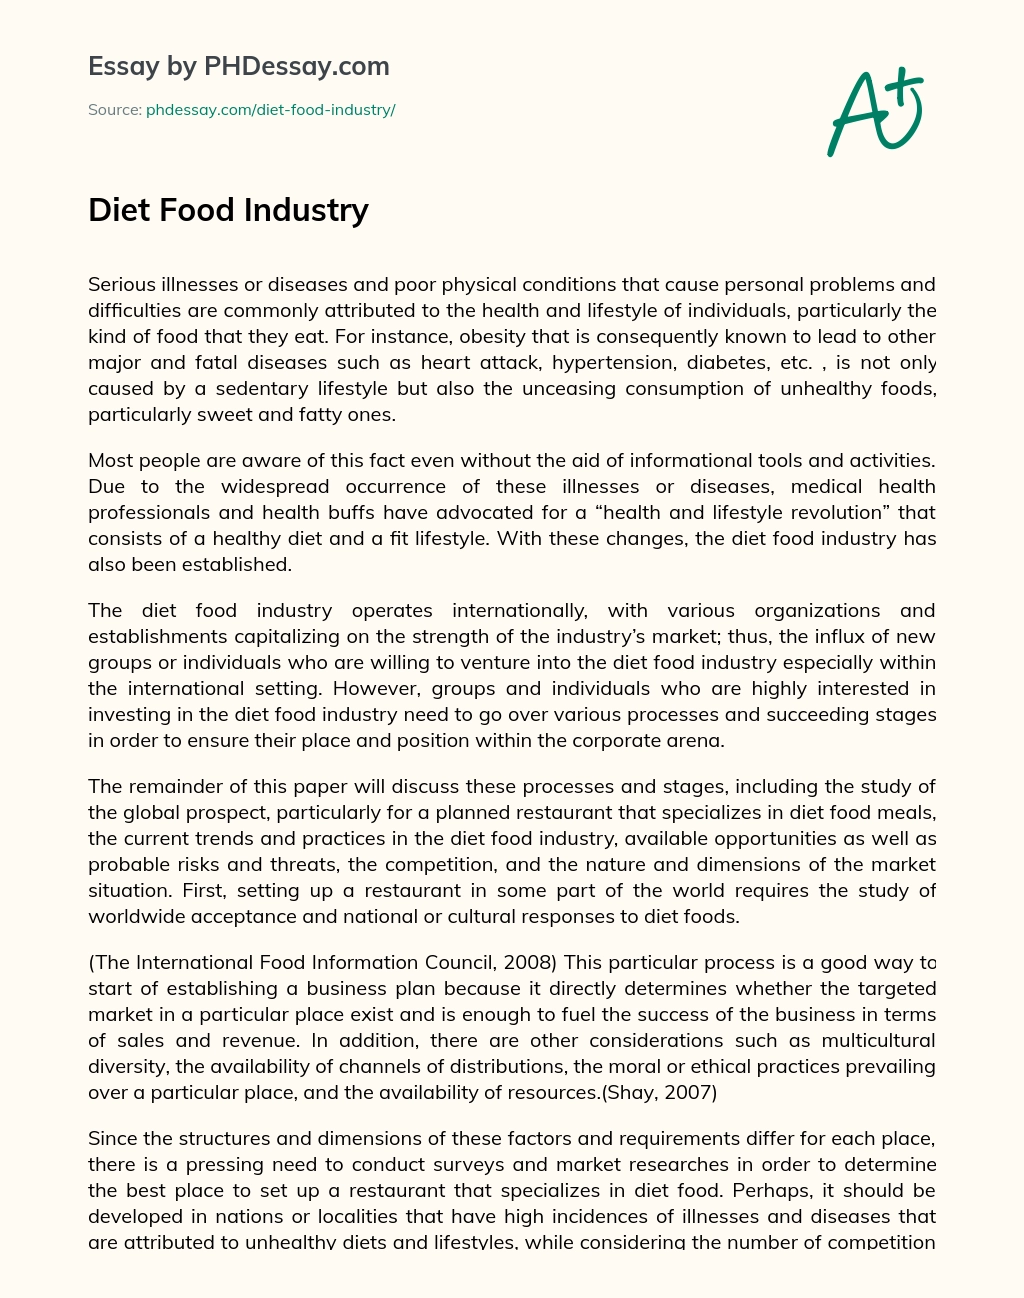 Diet Food Industry essay